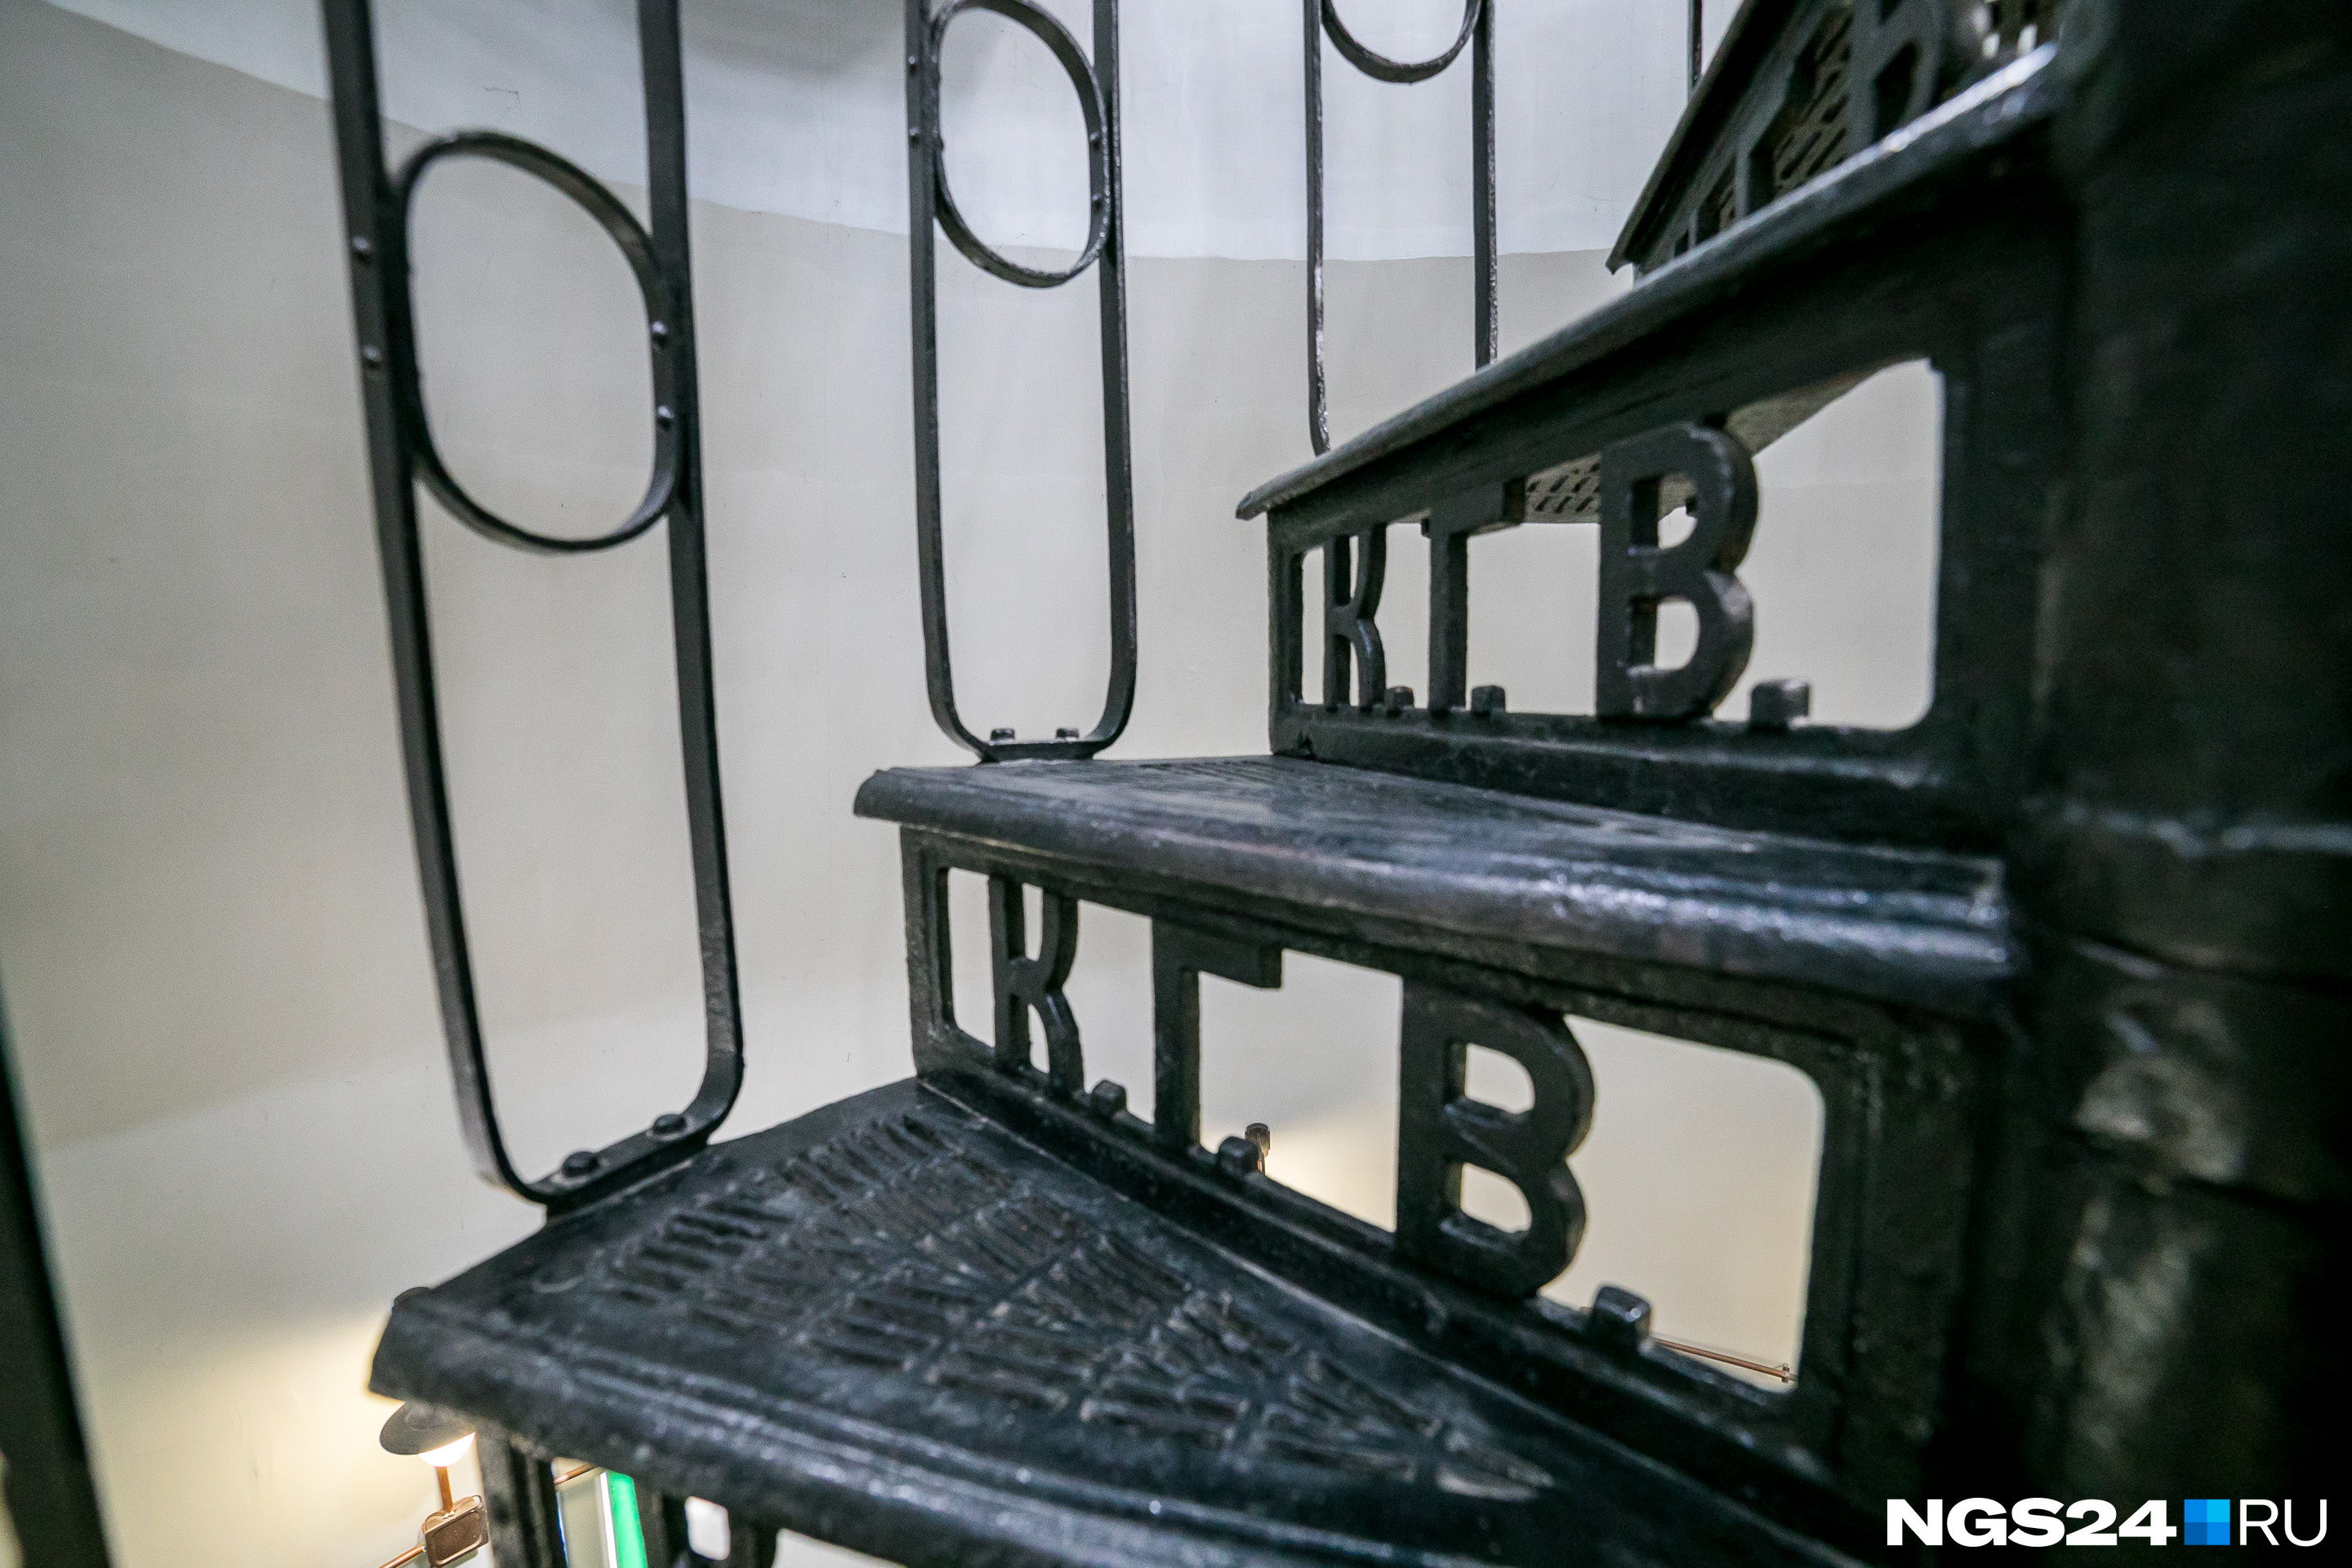 Чугунная лестница для красноярского городского водопровода (КГВ) изготовлена по спецзаказу в 1913 году и прослужит, наверное, еще несколько веков